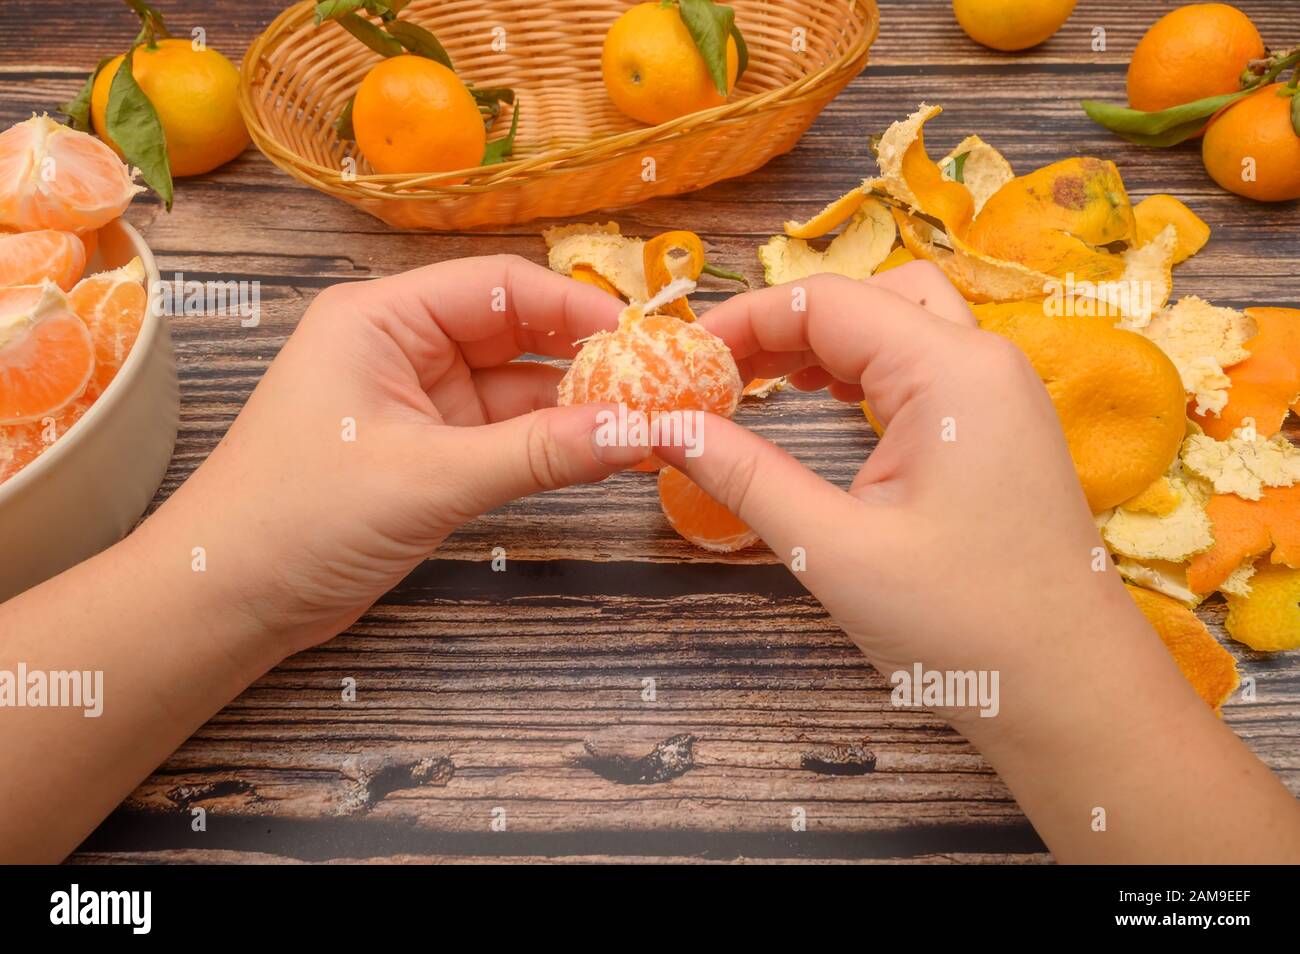 Pelando una mandarina, quitando concha a una mandarina. Stock